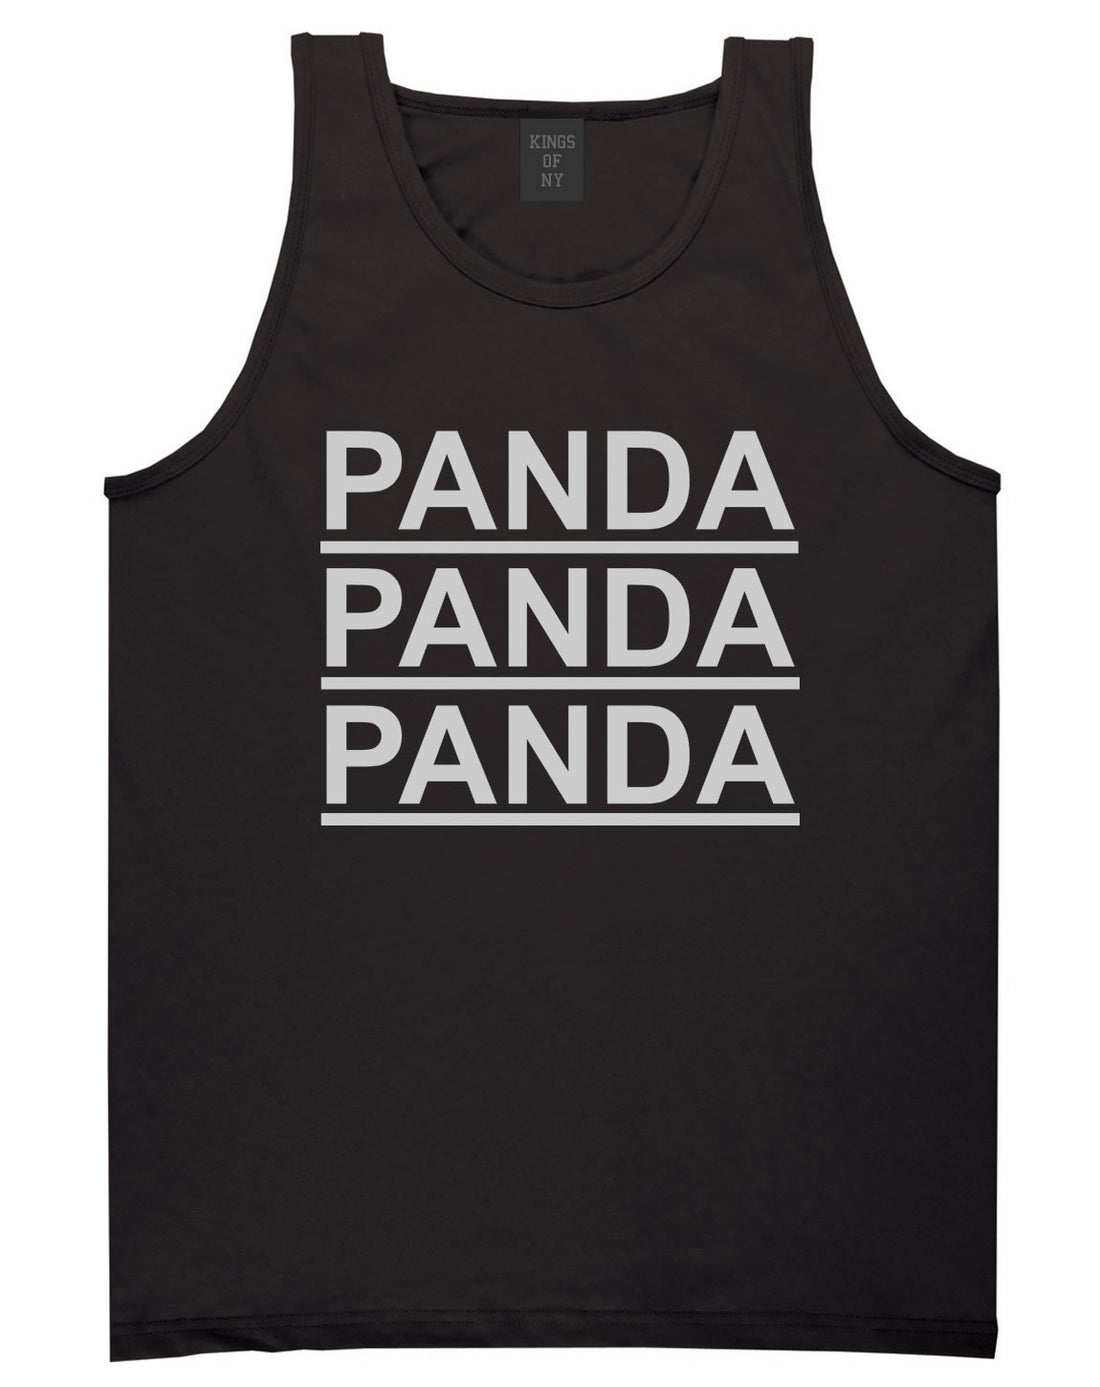 Panda Panda Panda Tank Top